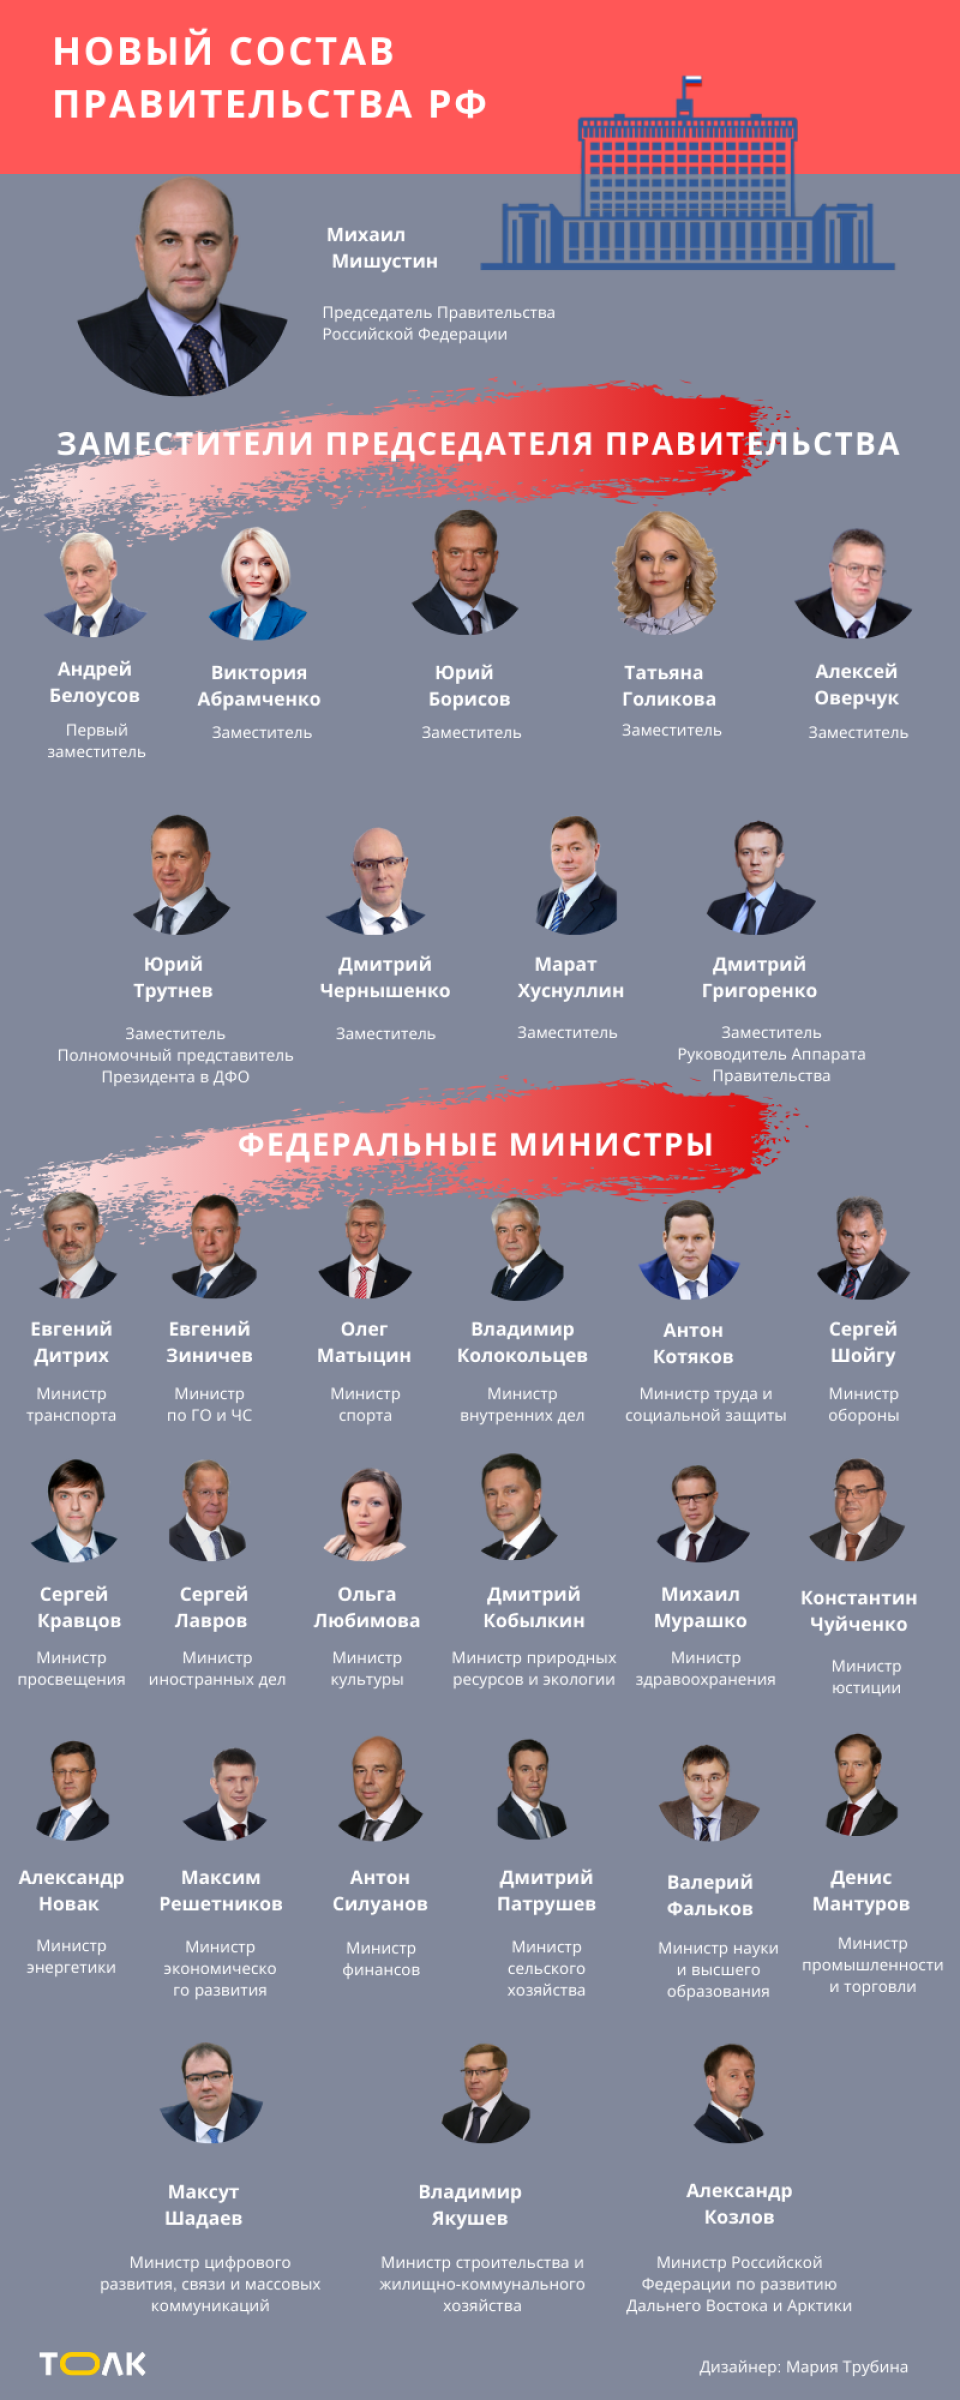 Не только столичные штучки: откуда родом новые члены правительства России